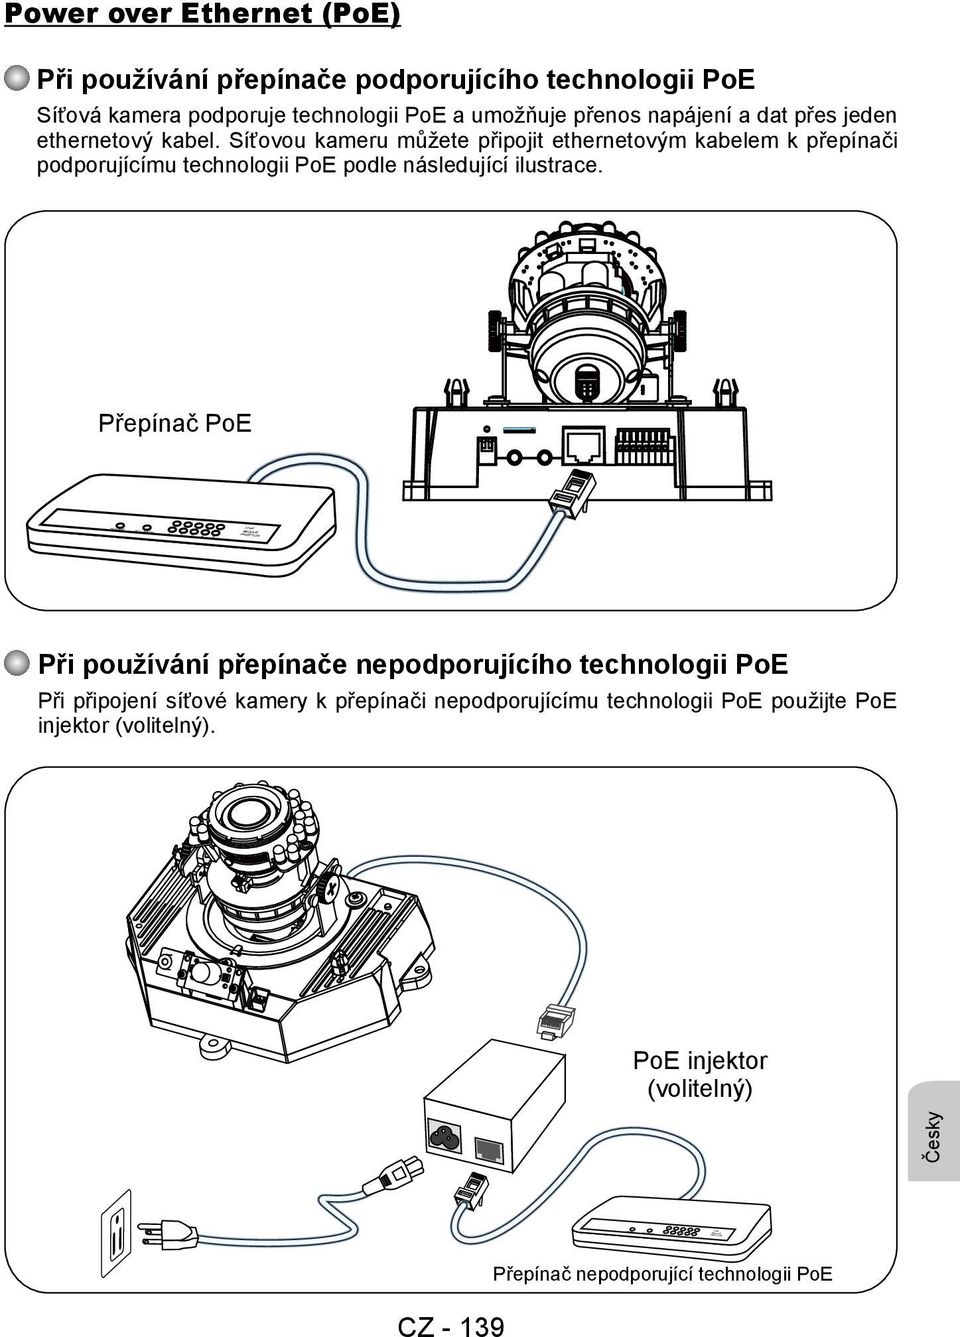 Síťovou kameru můžete připojit ethernetovým kabelem k přepínači podporujícímu technologii PoE podle následující ilustrace.